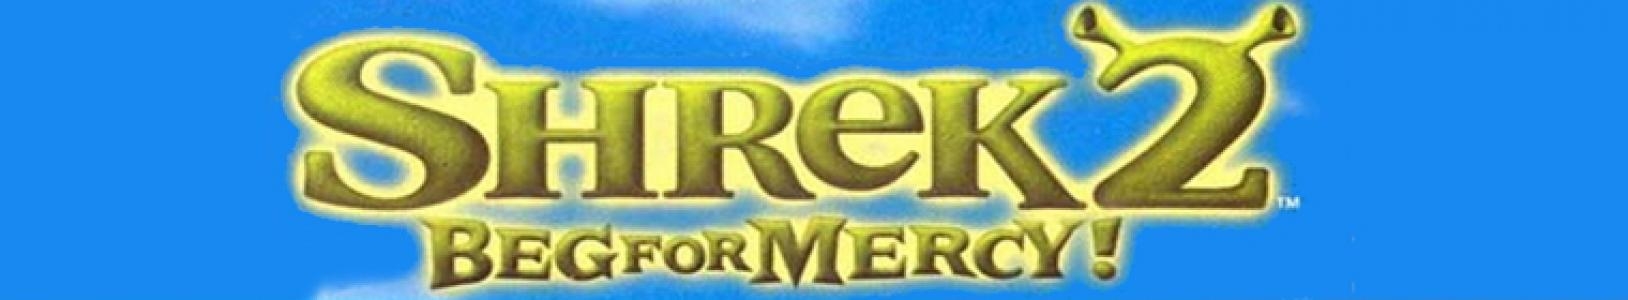 Shrek 2: Beg for Mercy! banner